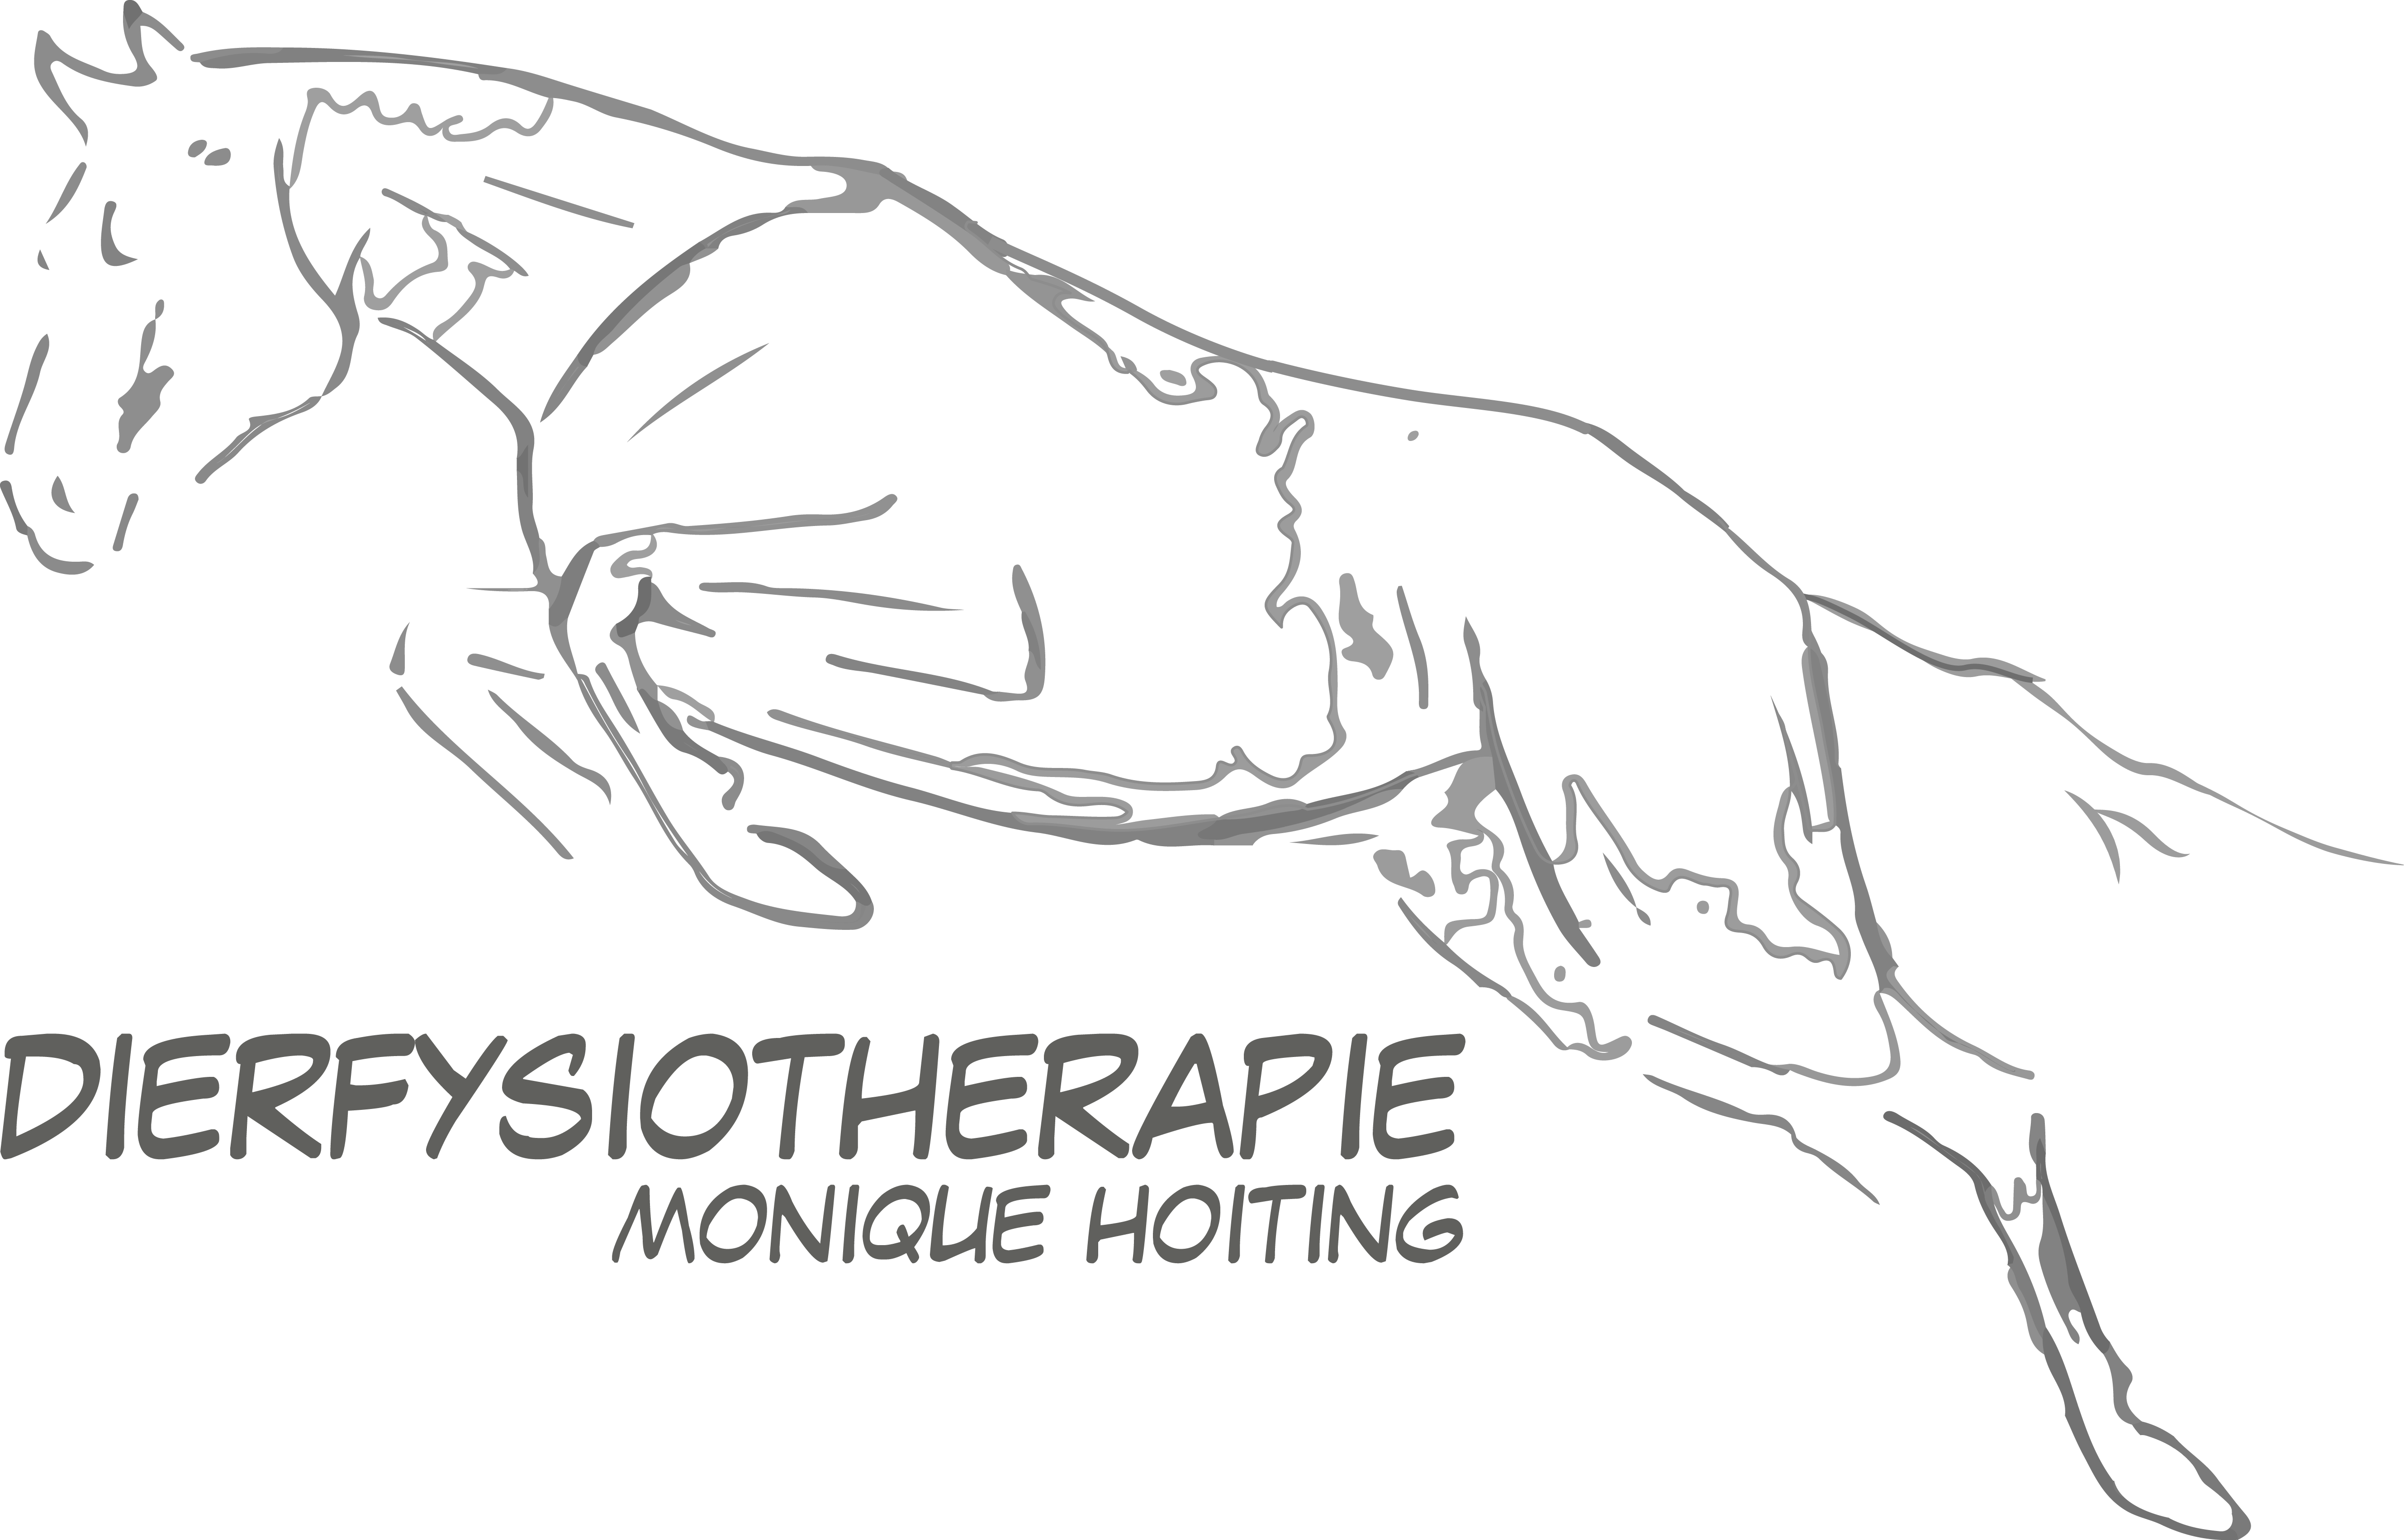 Dierfysiotherapie Monique Hoiting